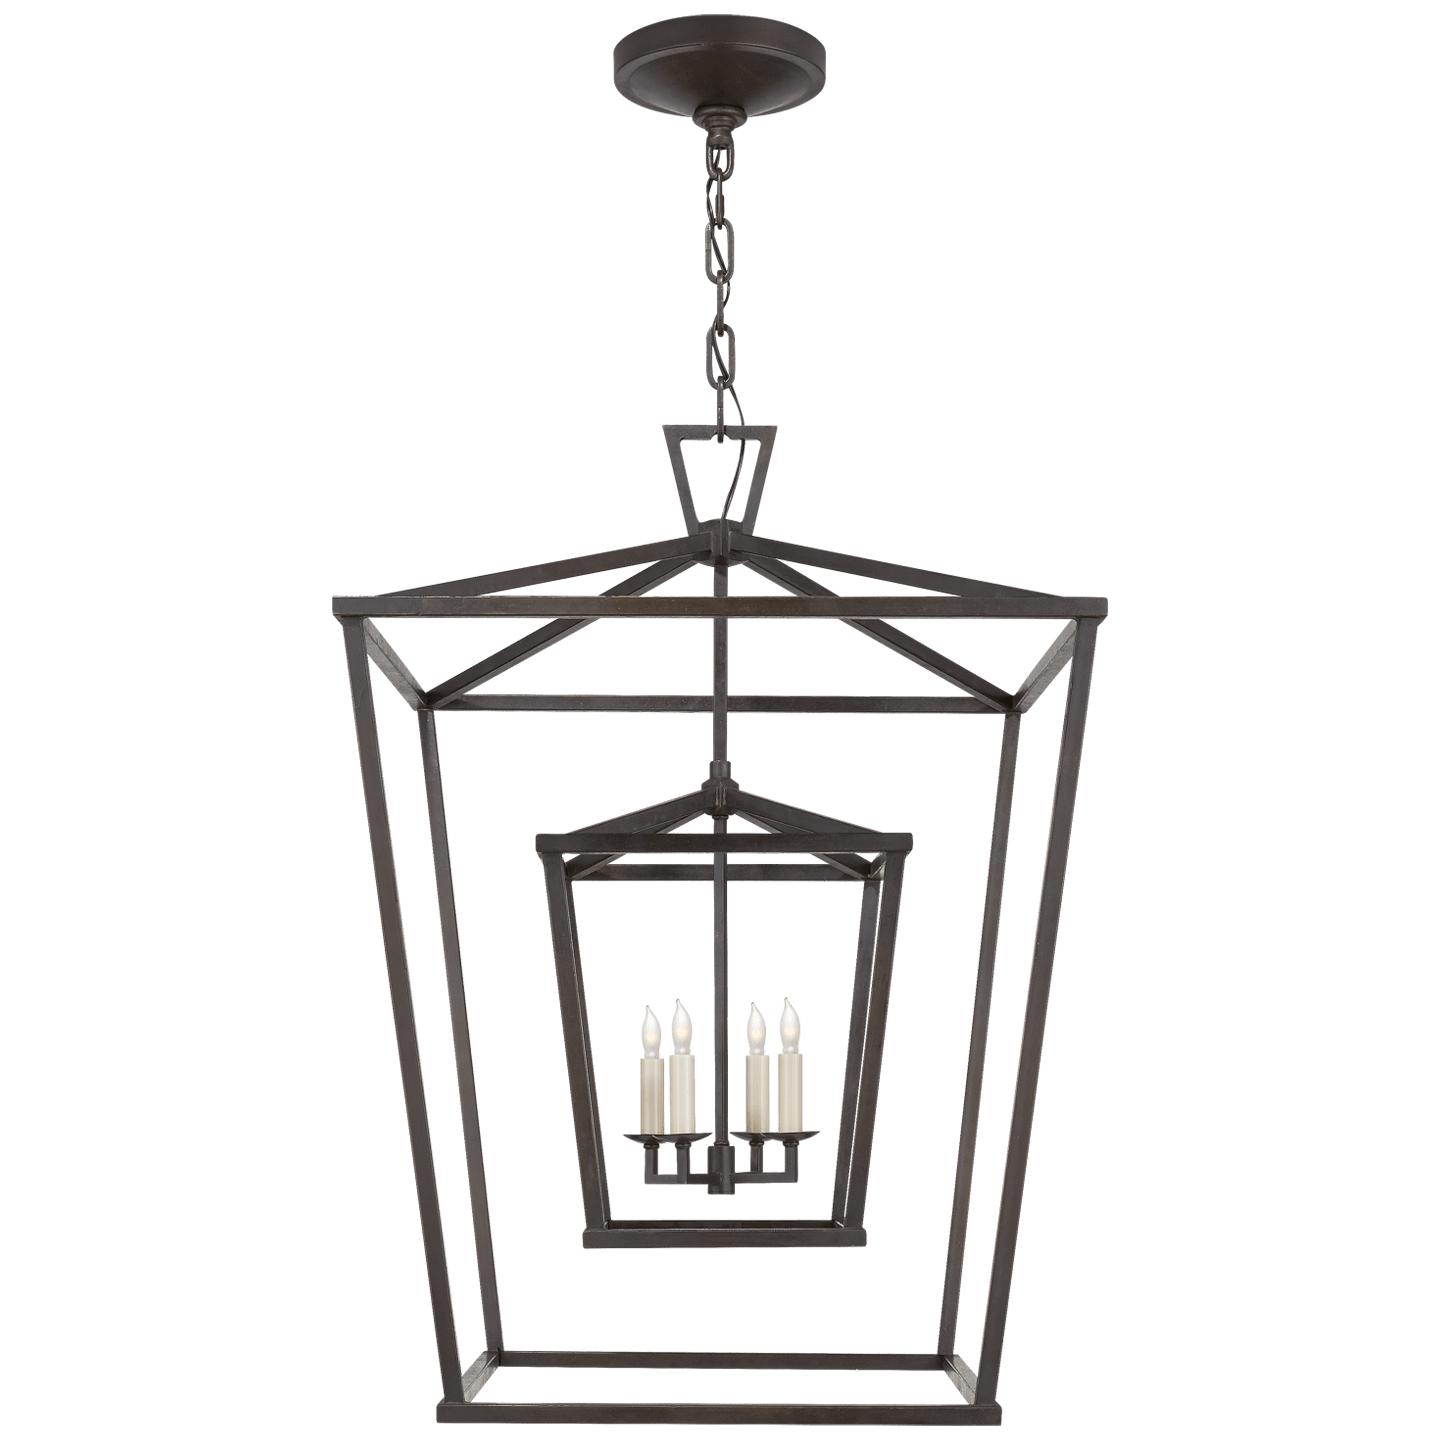 Купить Подвесной светильник Darlana Large Double Cage Lantern в интернет-магазине roooms.ru